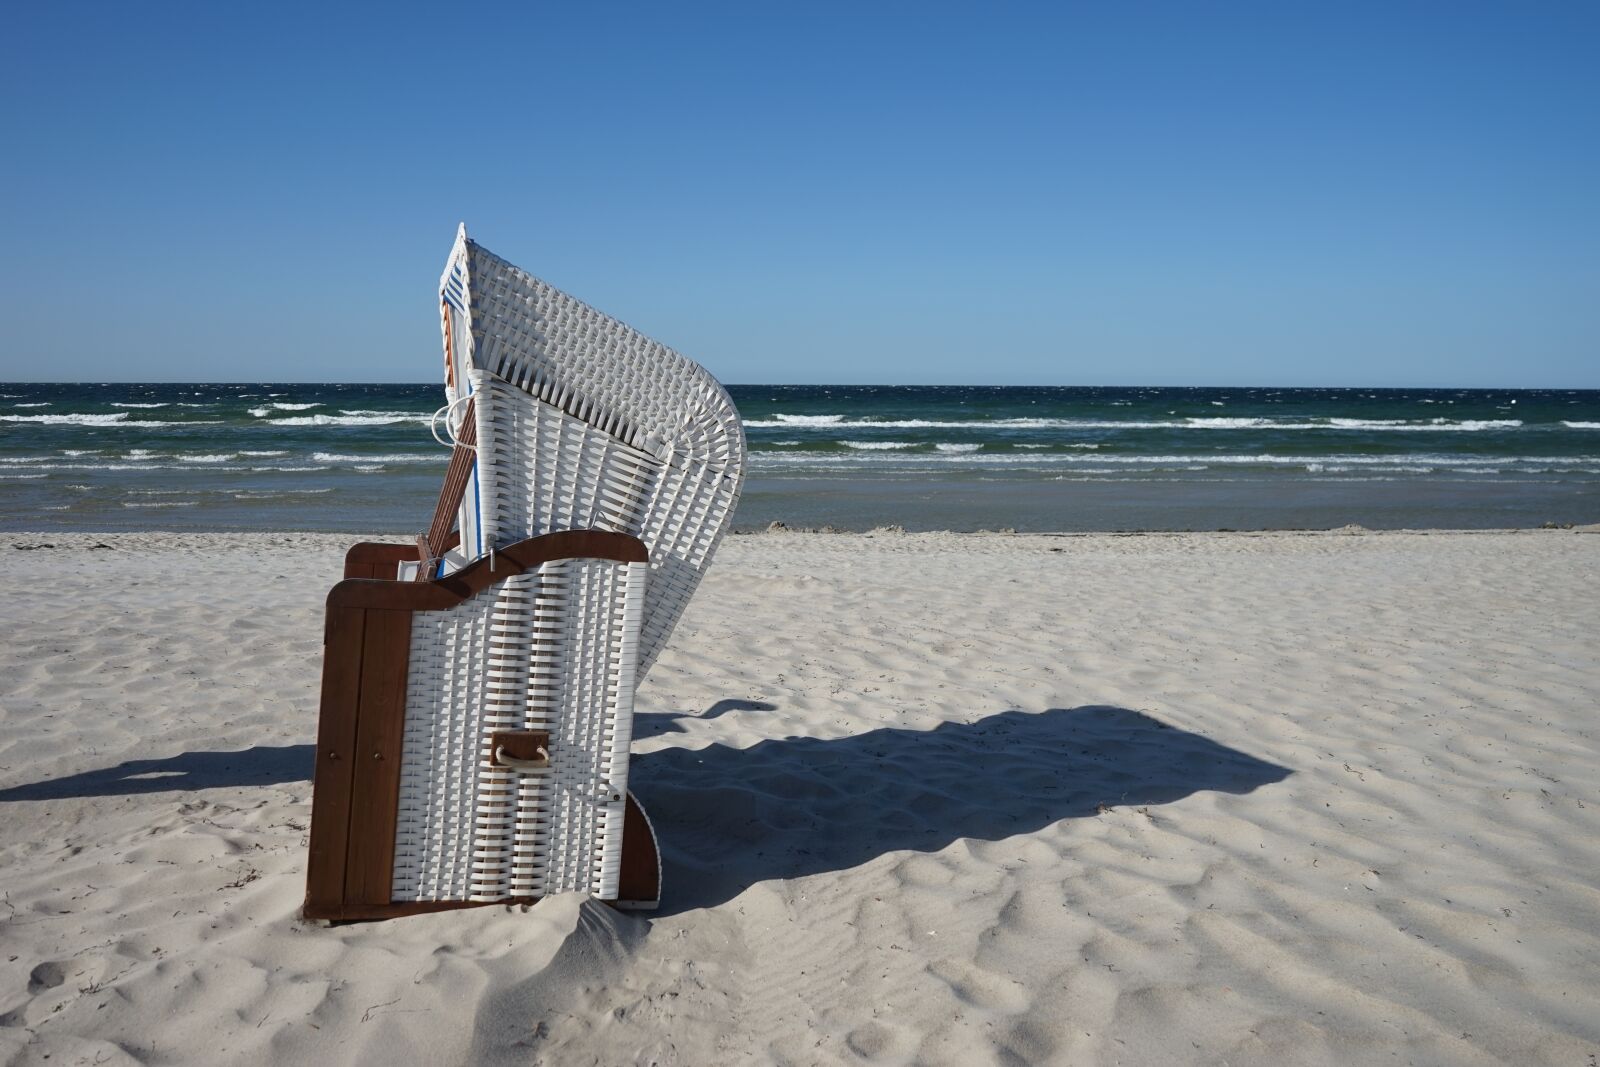 Sony a7 + Sony FE 28-70mm F3.5-5.6 OSS sample photo. Beach chair, beach, sea photography